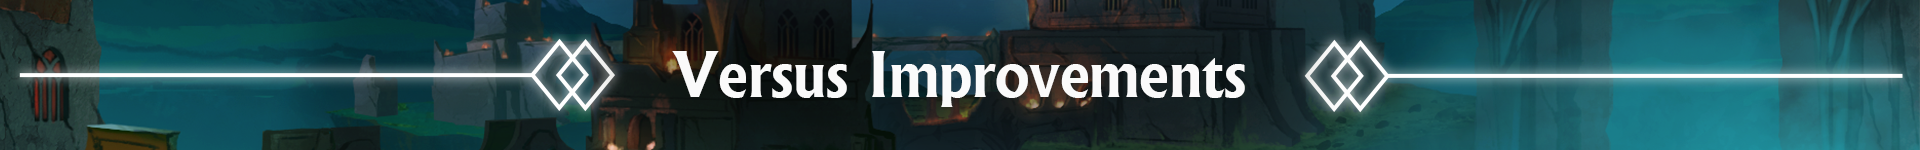 versus improvements